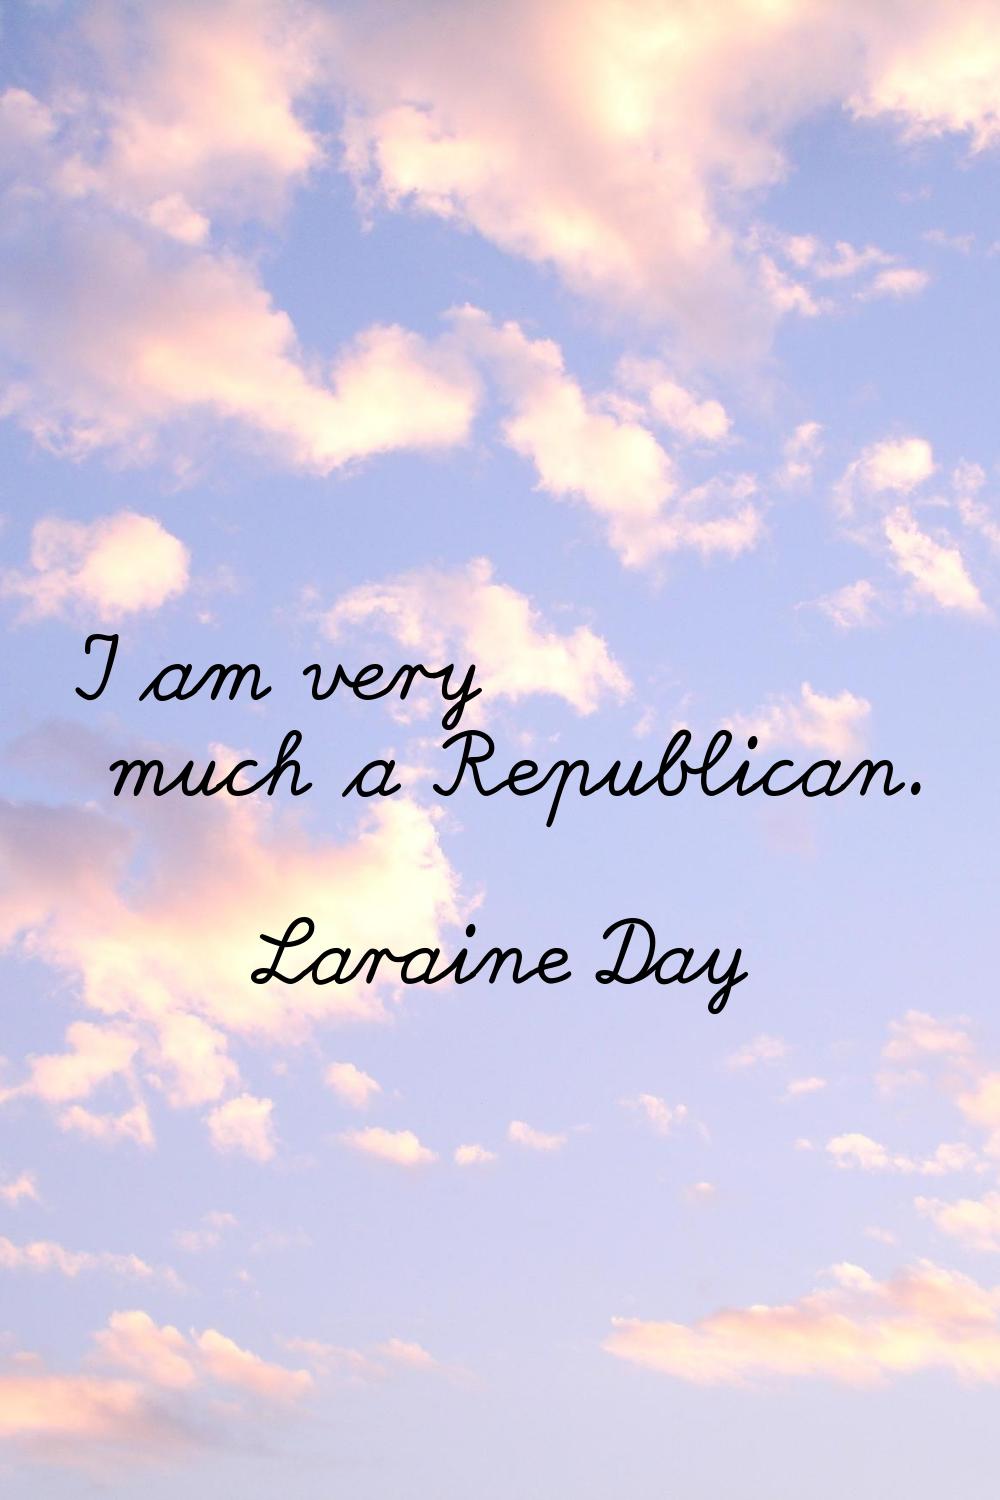 I am very much a Republican.